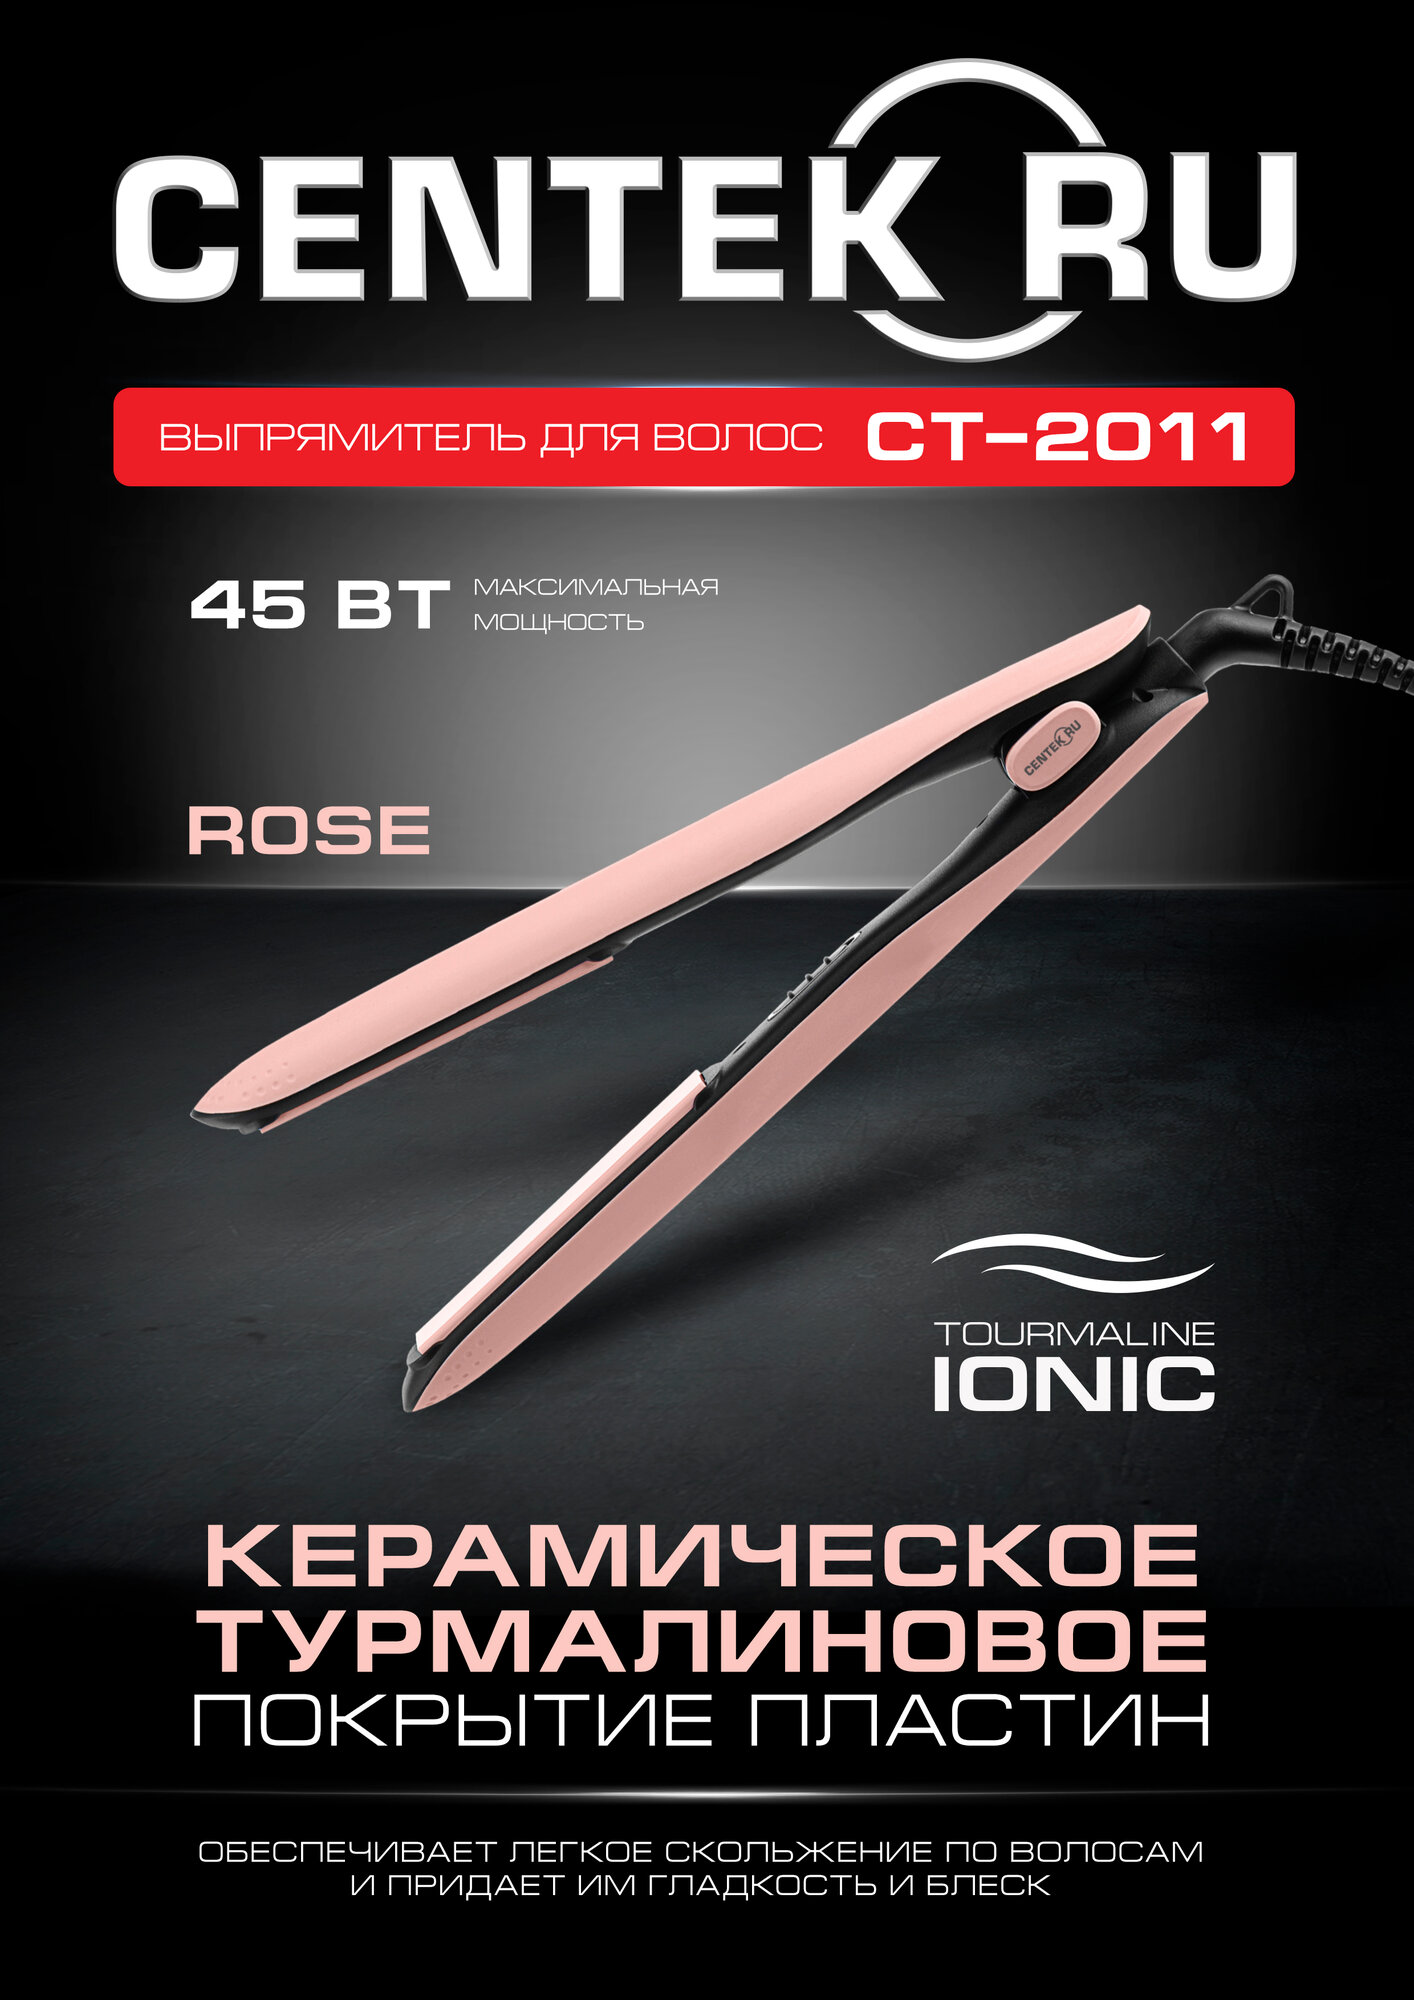 Выпрямитель для волос CENTEK CT-2011 ROSE: 45 Вт, турмалиновая ионизация, плавающие керамич. пластины 96x26 мм